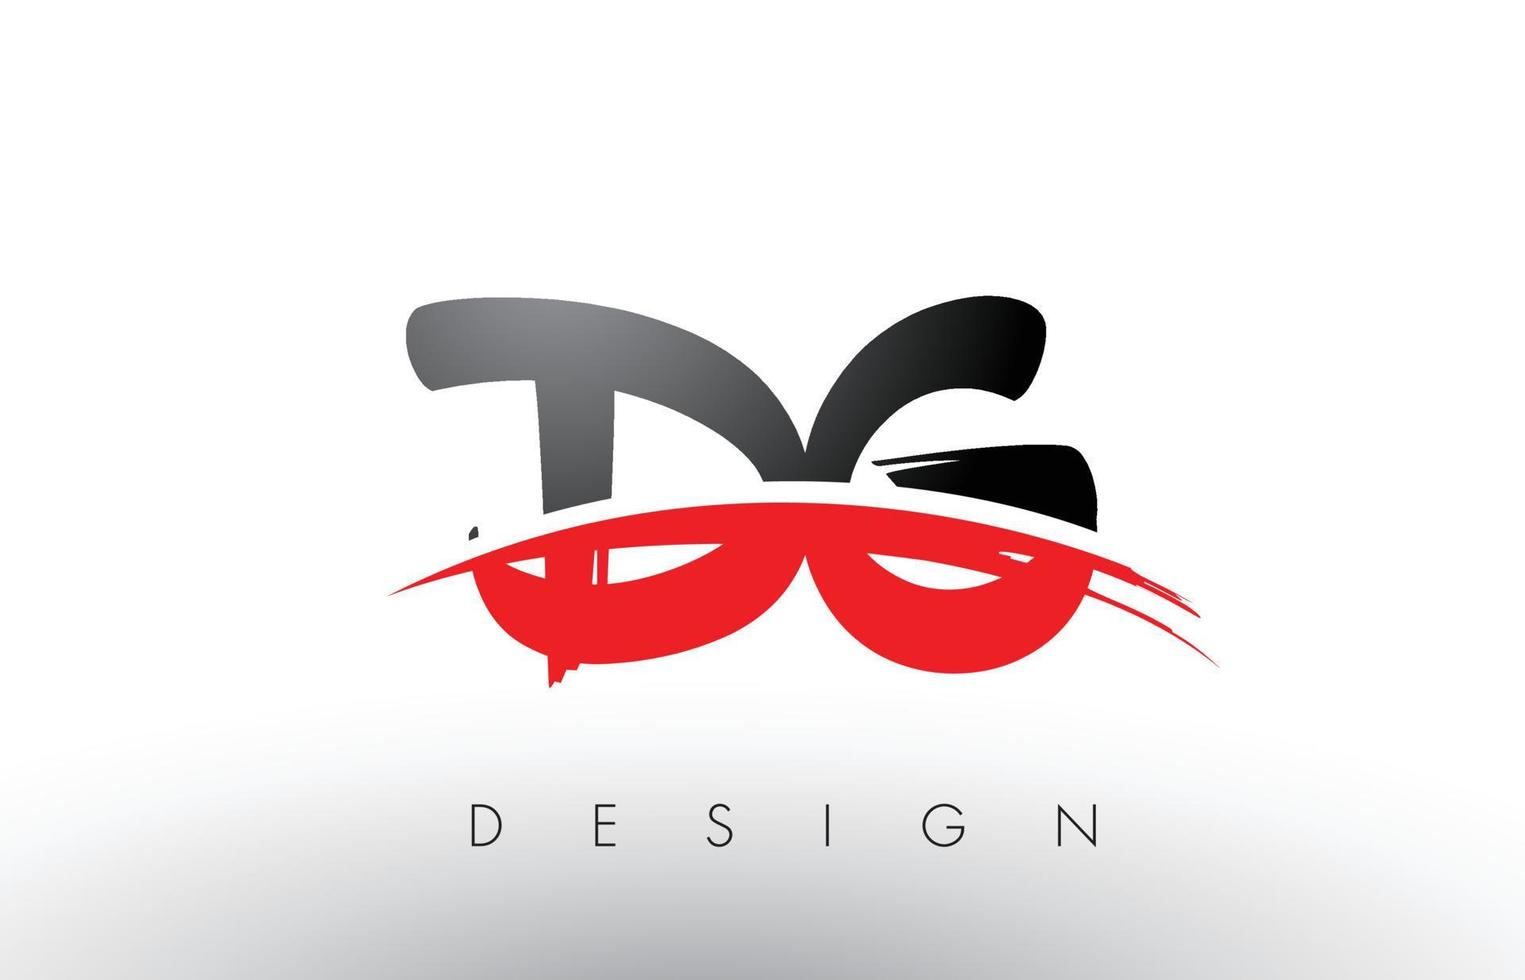 dg dg brush logo letters met rode en zwarte swoosh brush voorkant vector